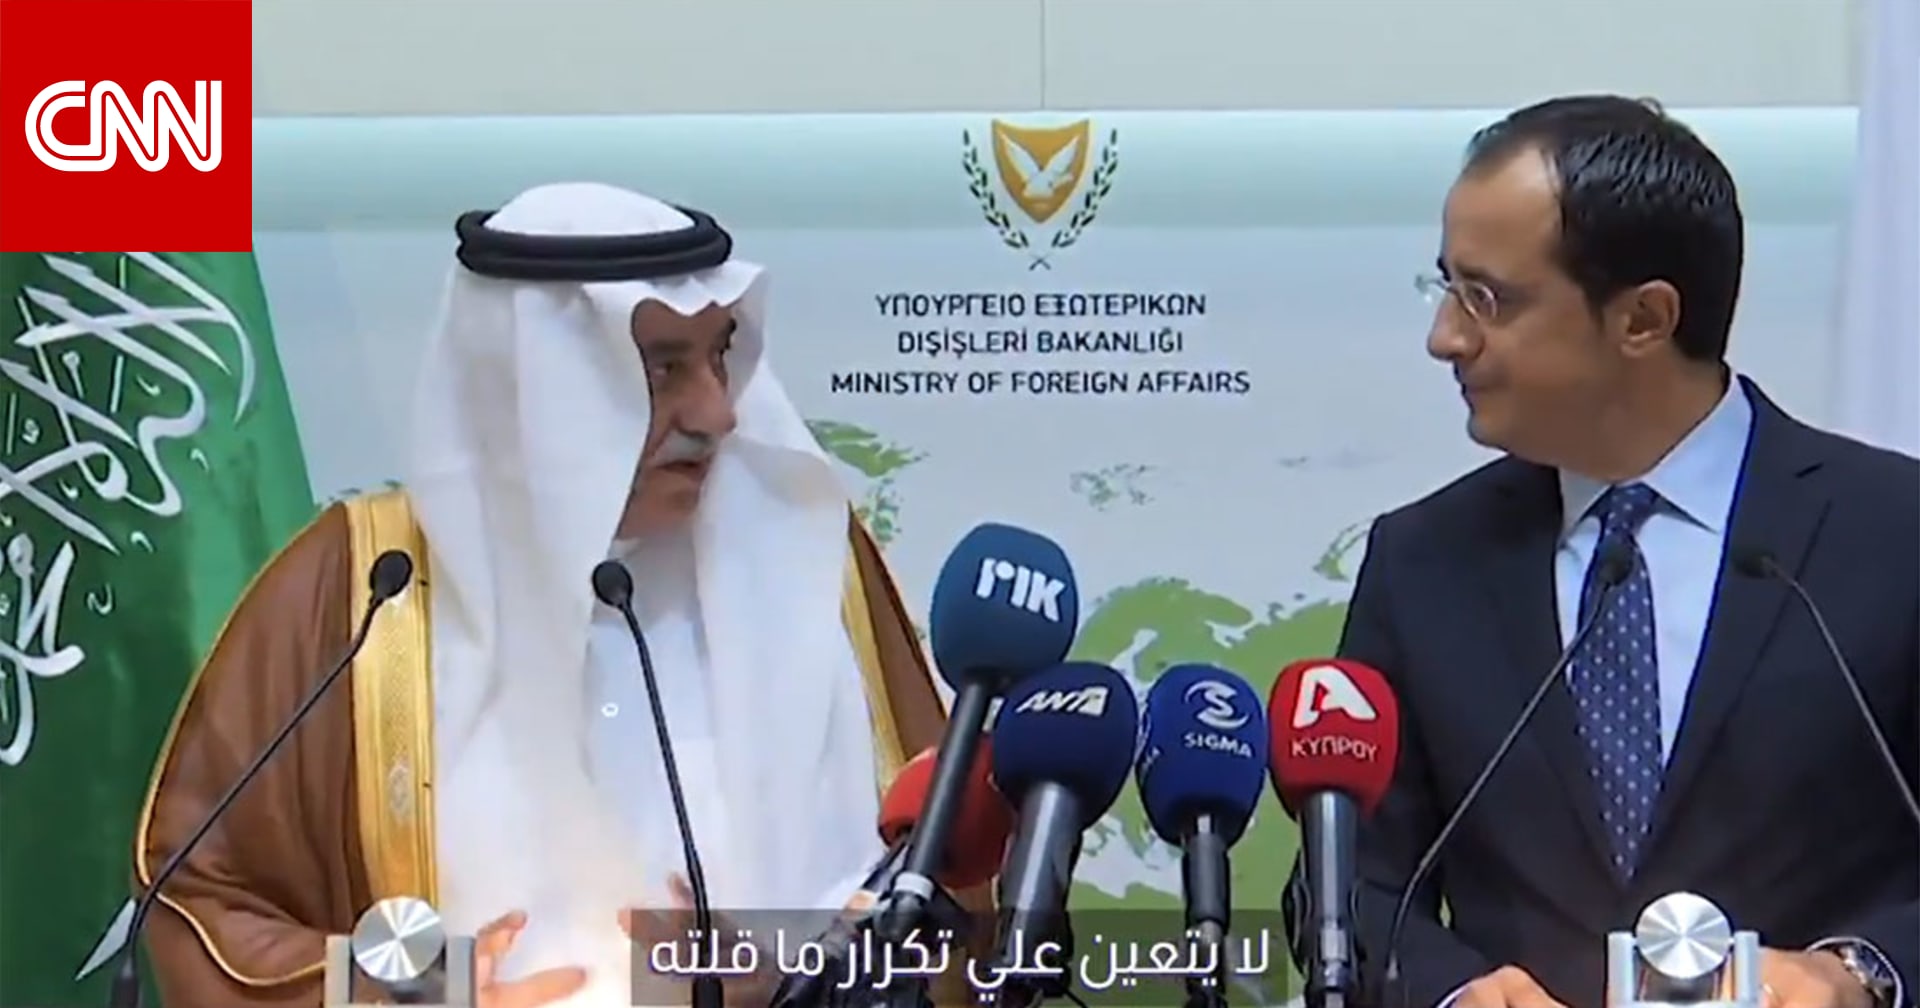 قرصة لتركيا .. ماذا قال وزير خارجية السعودية في قبرص؟ وكيف كان التفاعل؟ - CNN Arabic